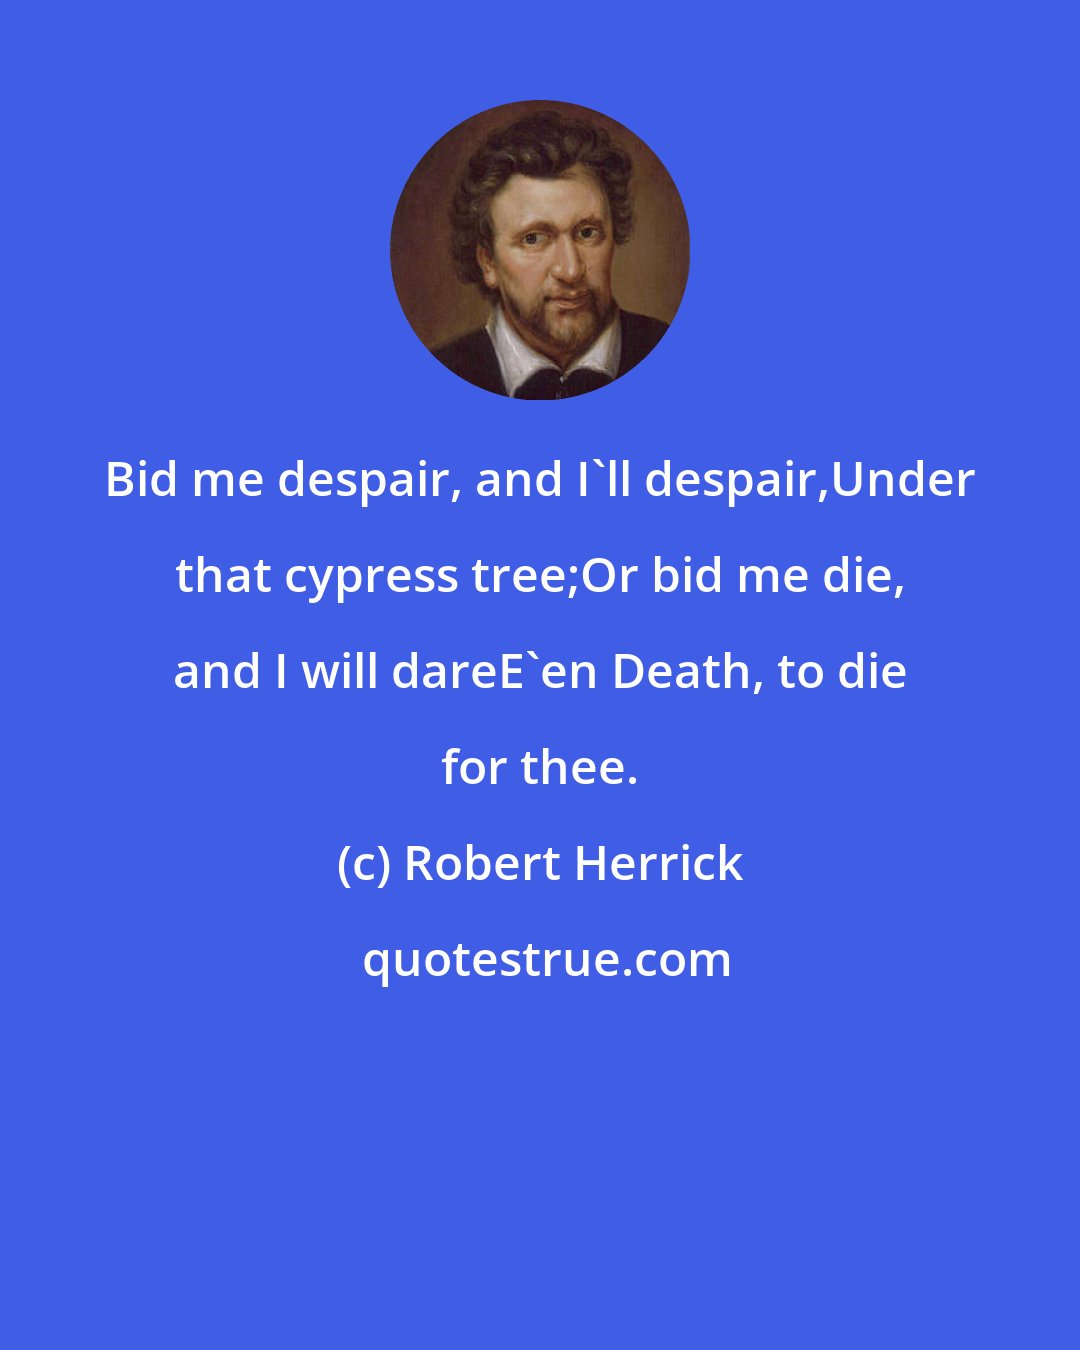 Robert Herrick: Bid me despair, and I'll despair,Under that cypress tree;Or bid me die, and I will dareE'en Death, to die for thee.